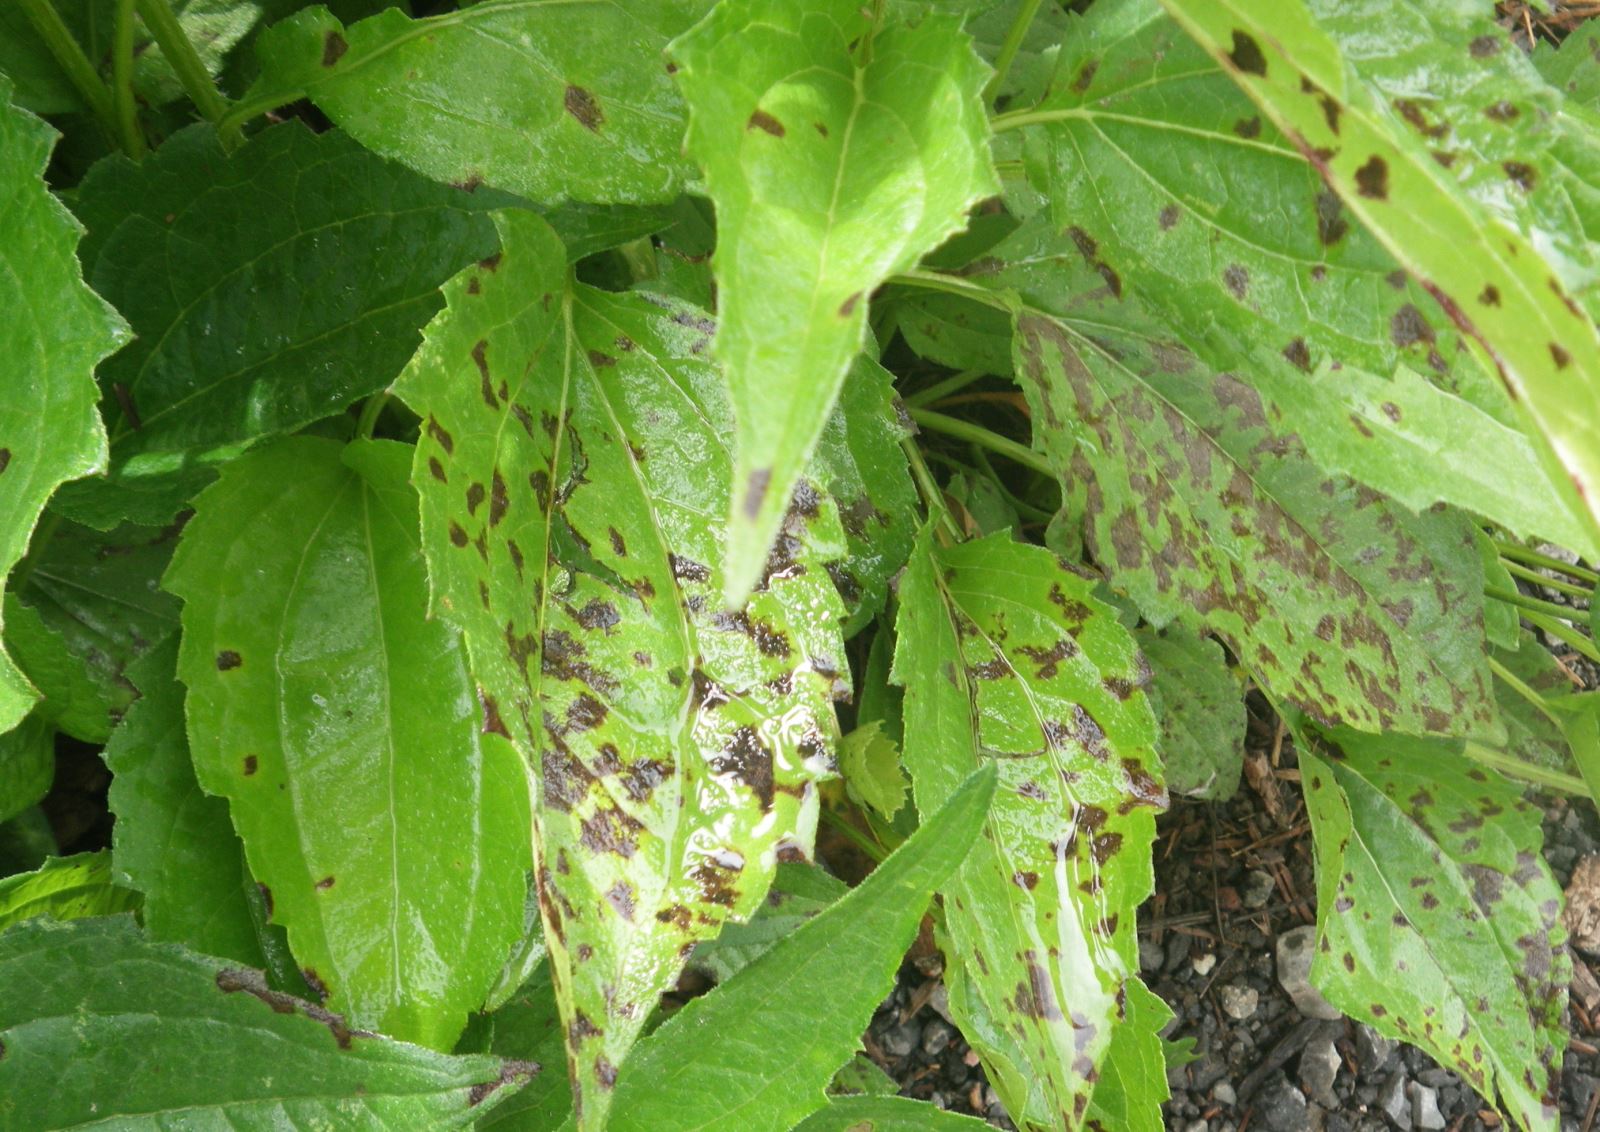 Taches foliaires sur rudbeckia probablement causées par Septoria sp